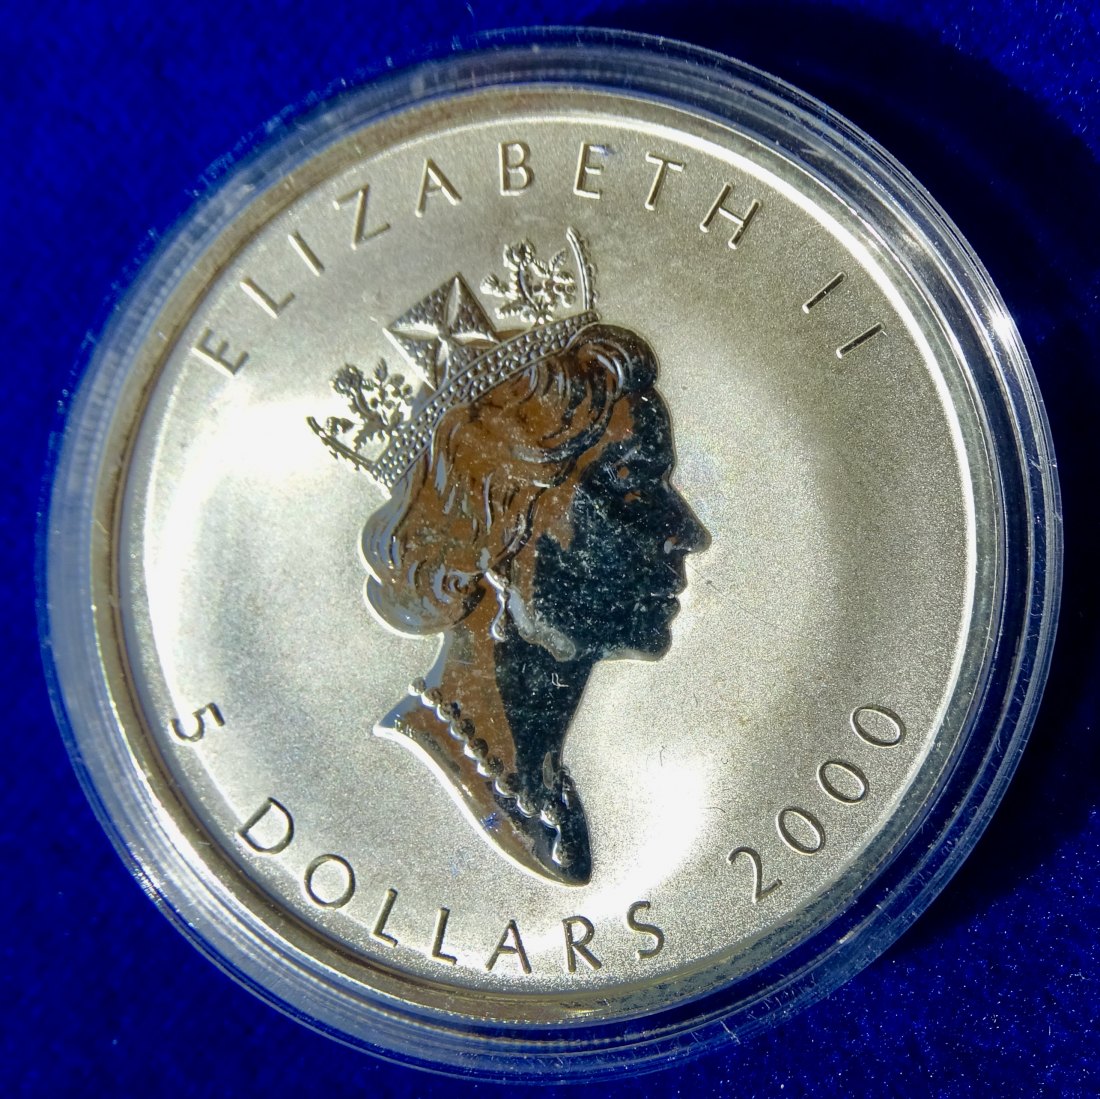  Kanada 5 Dollars 2000 Millennium Expo 2000 Hannover Weltausstellung 1oz Silbermünze   